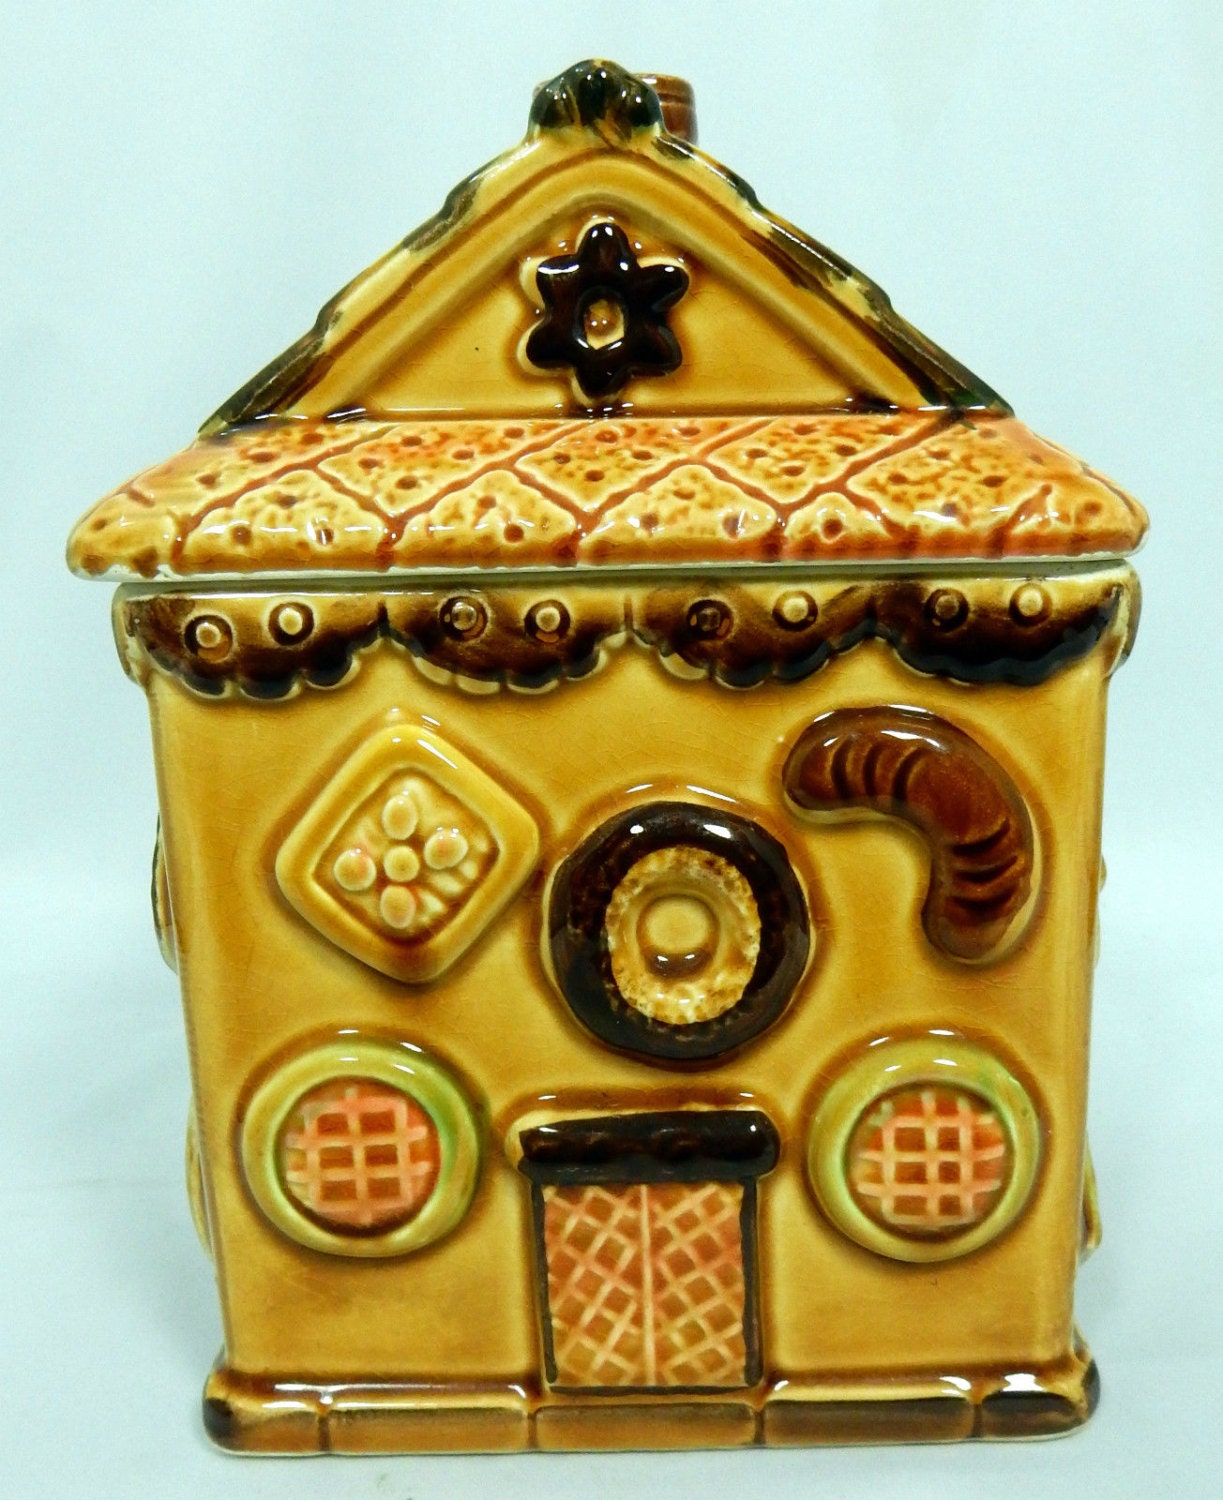 gingerbread house cookie jar